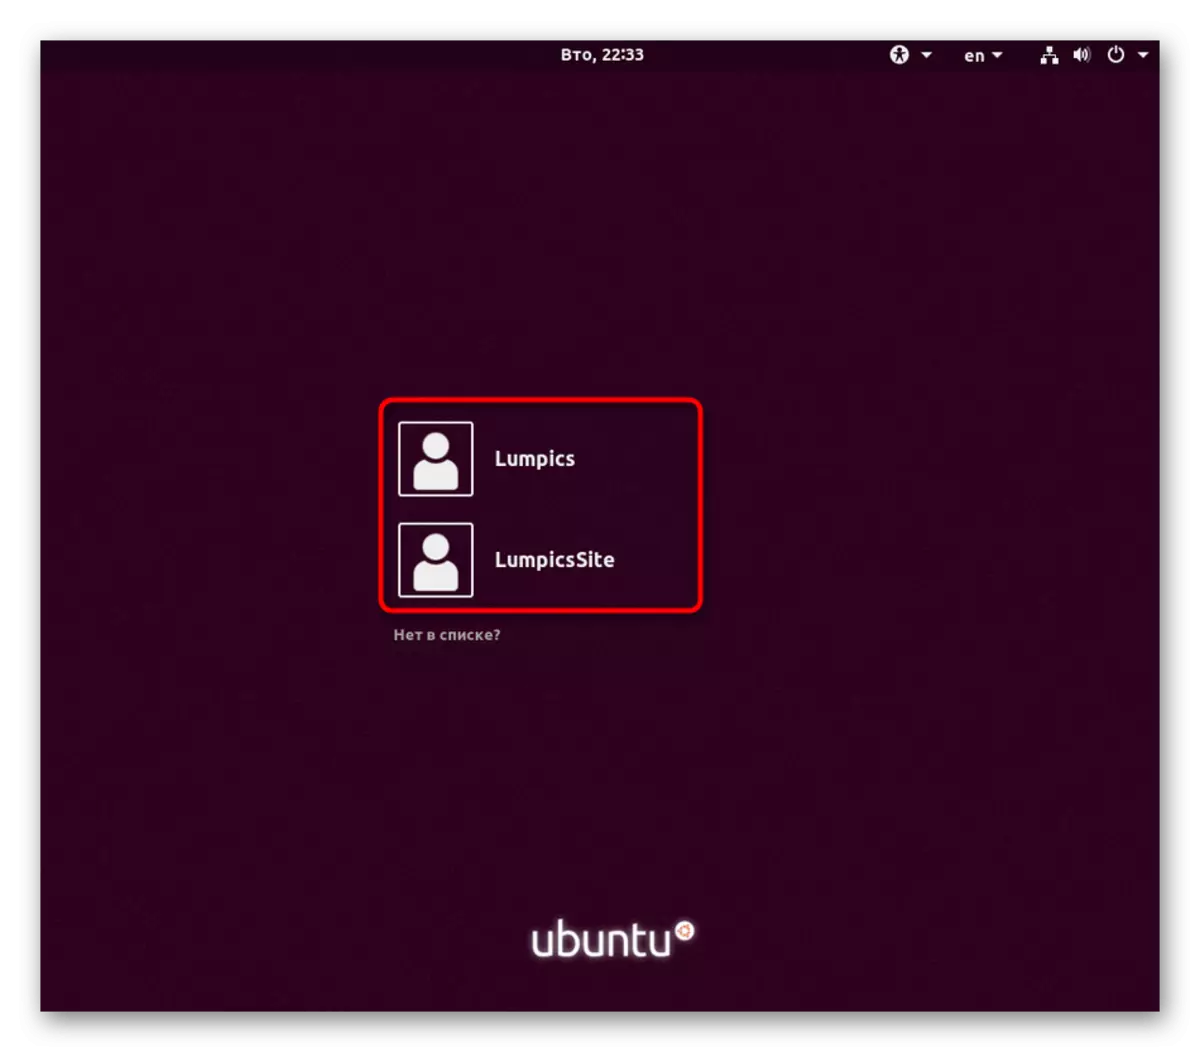 Izvēlieties lietotāju, lai pārslēgtos aktīvā Linux sesijā